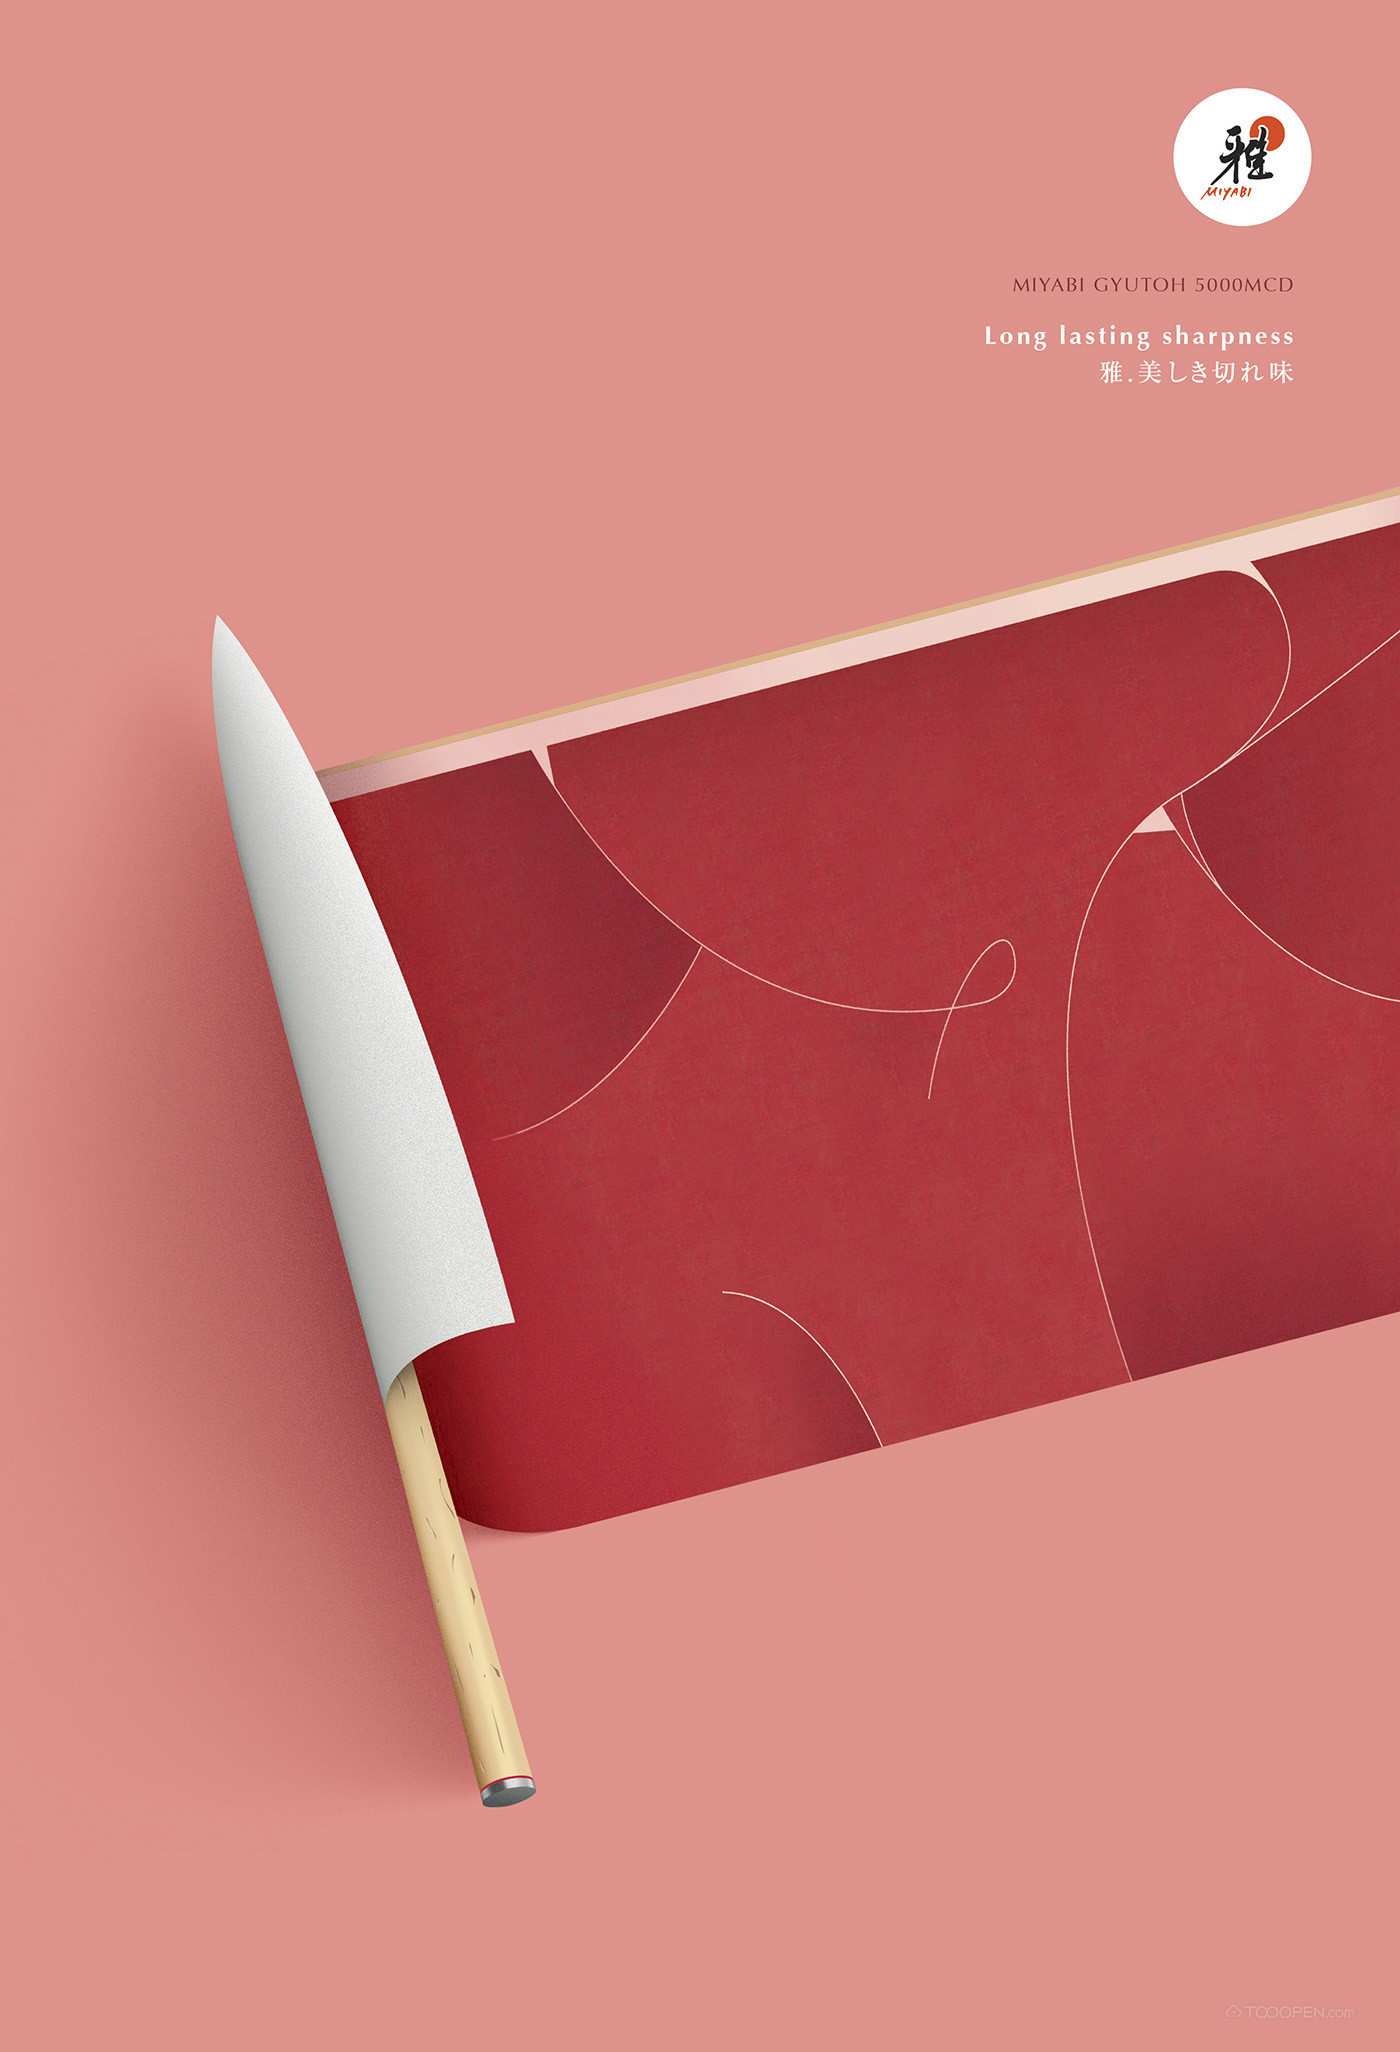 日本miyabi品牌刀具福田繁雄创意海报设计欣赏-06